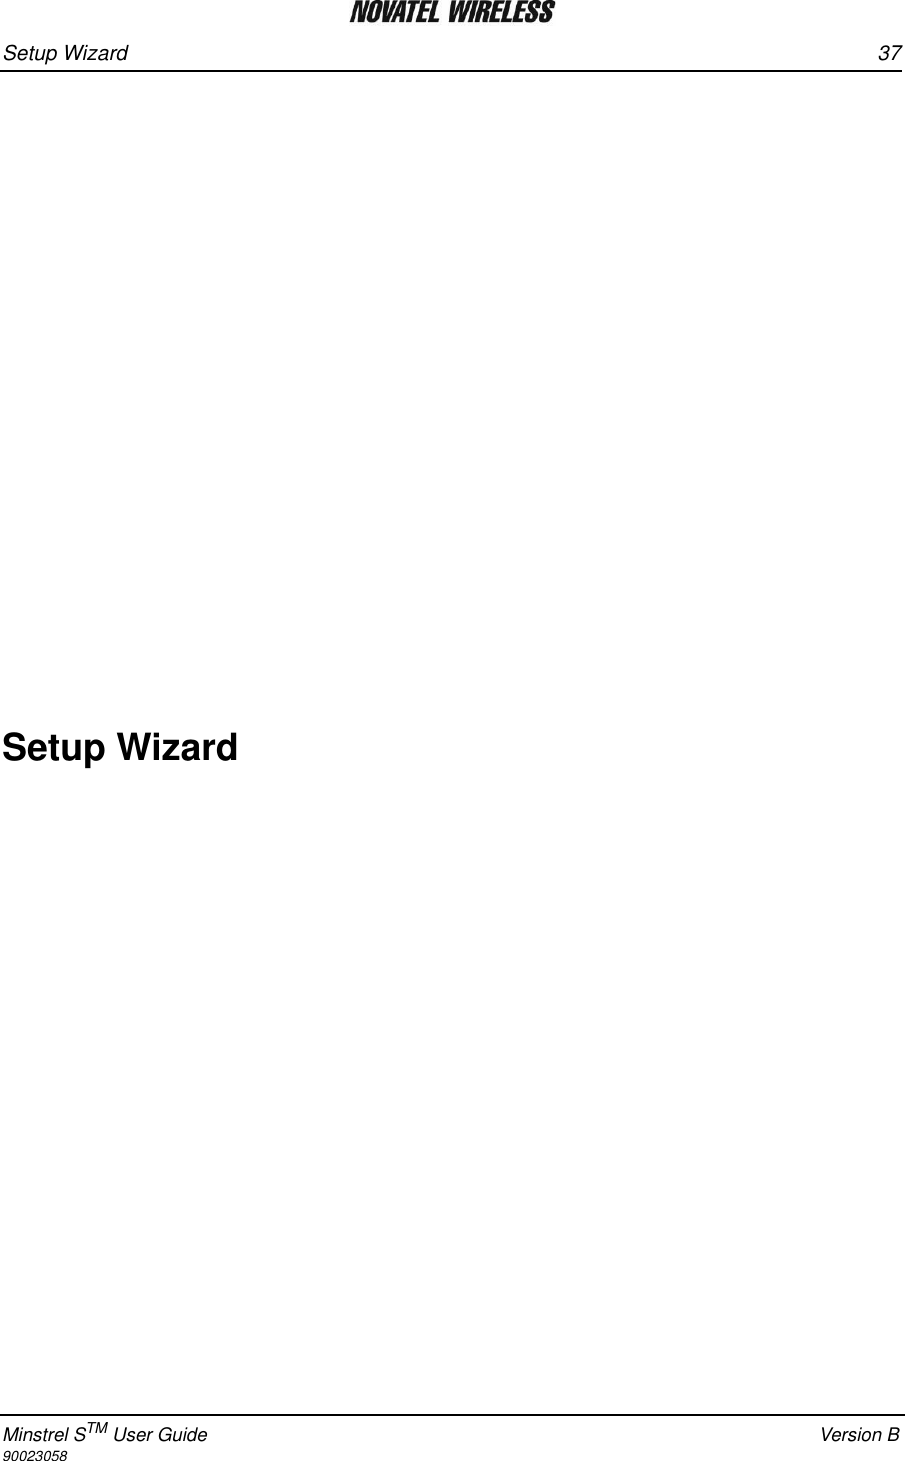 Setup Wizard 37Minstrel STM User Guide Version B90023058Setup Wizard